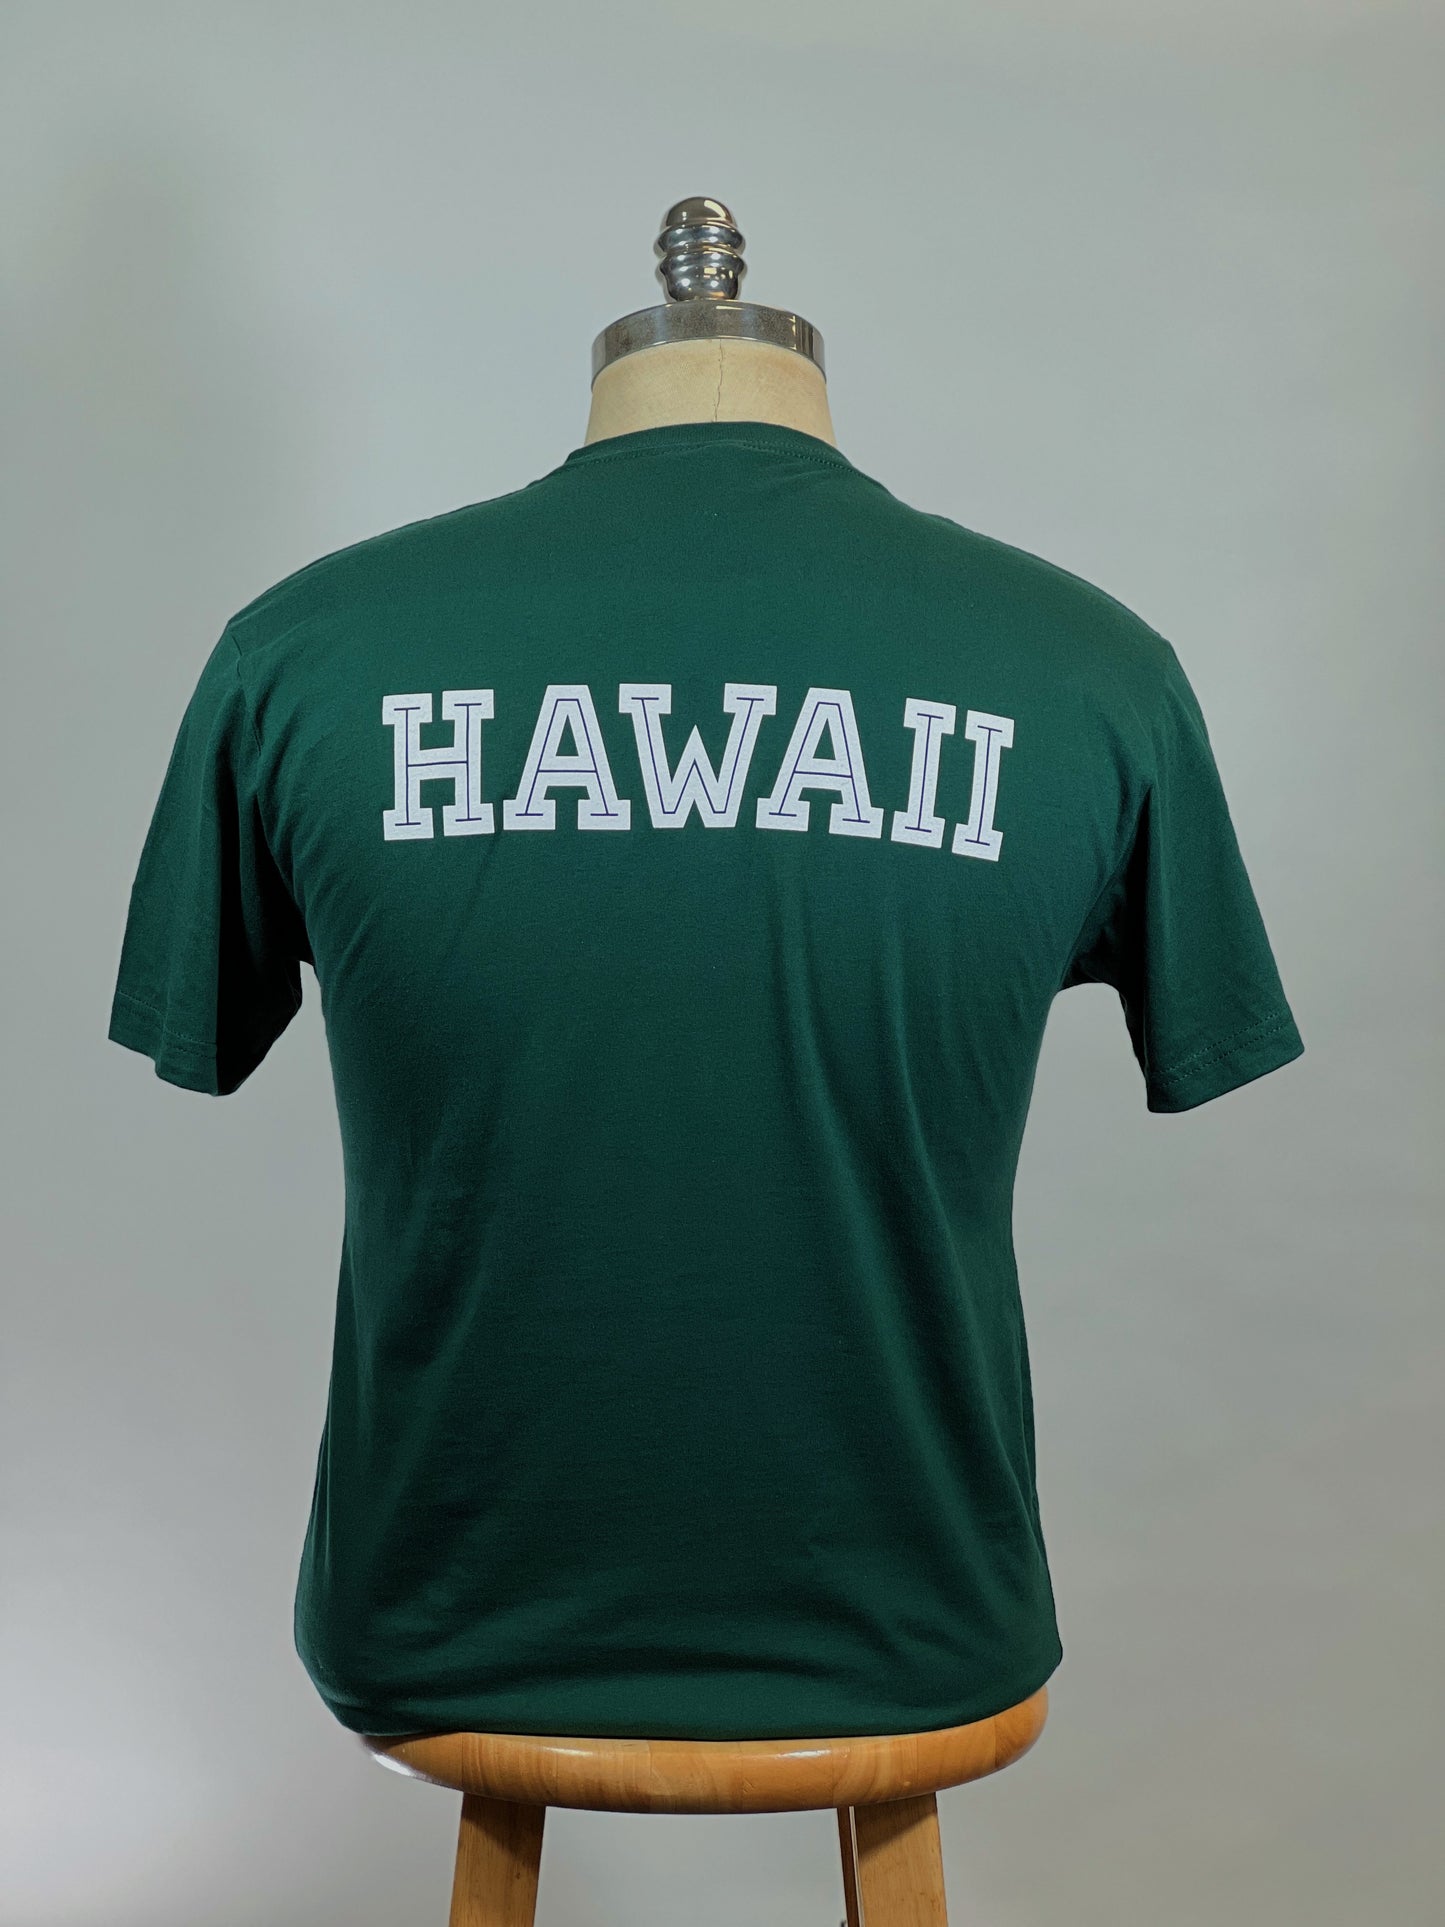 EVERY PLAY BETTER Box Logo "HAWAII" Tee ($5 will be donated to Nakoa/UH football)